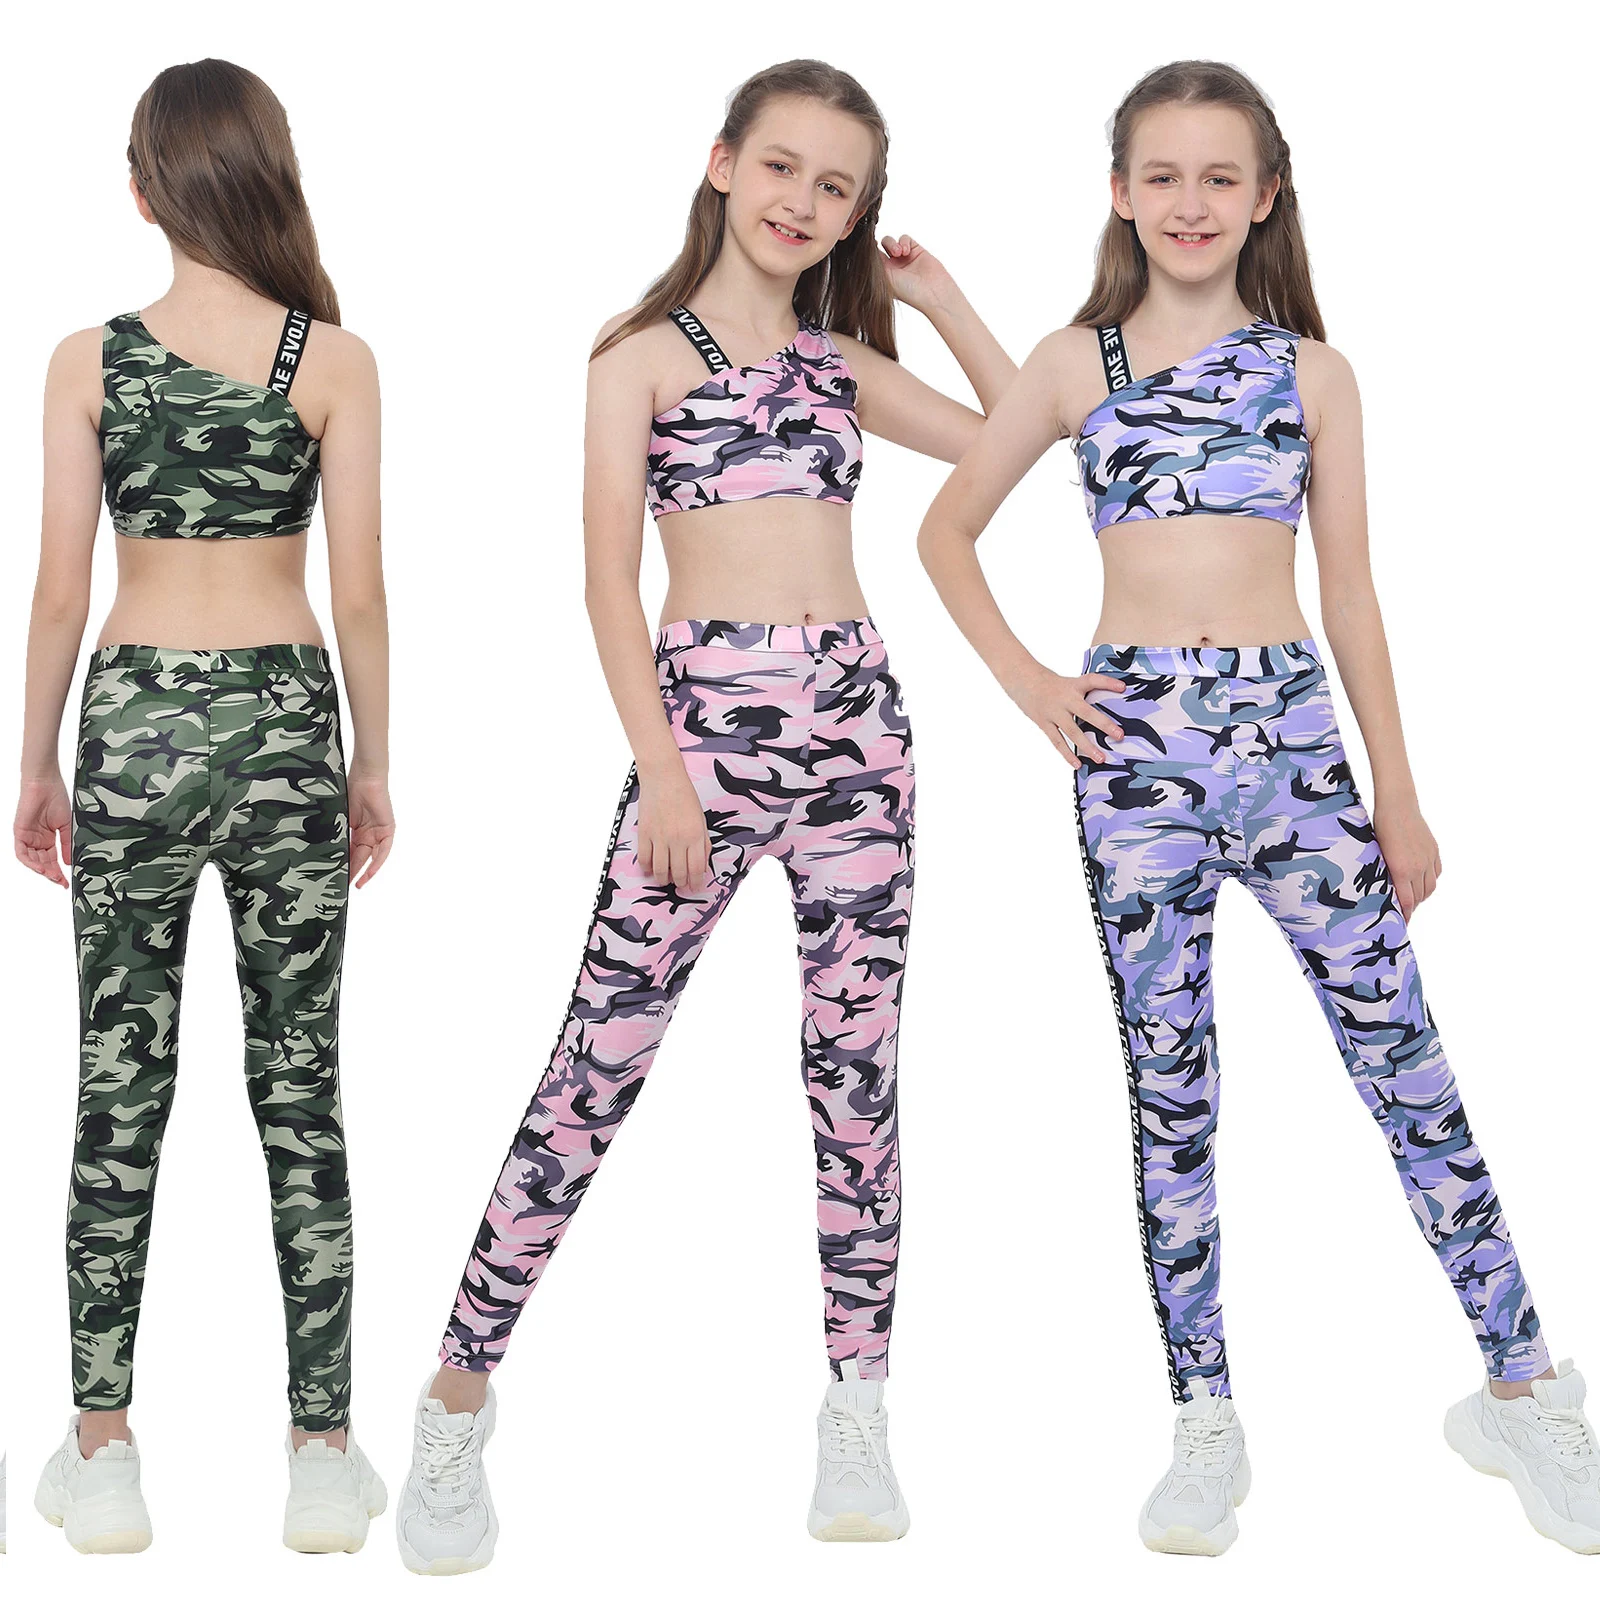 Kids Girls Ballet Dance Outfit Gymnastics Crop Tops+Bottom Set Workout Dancewear 